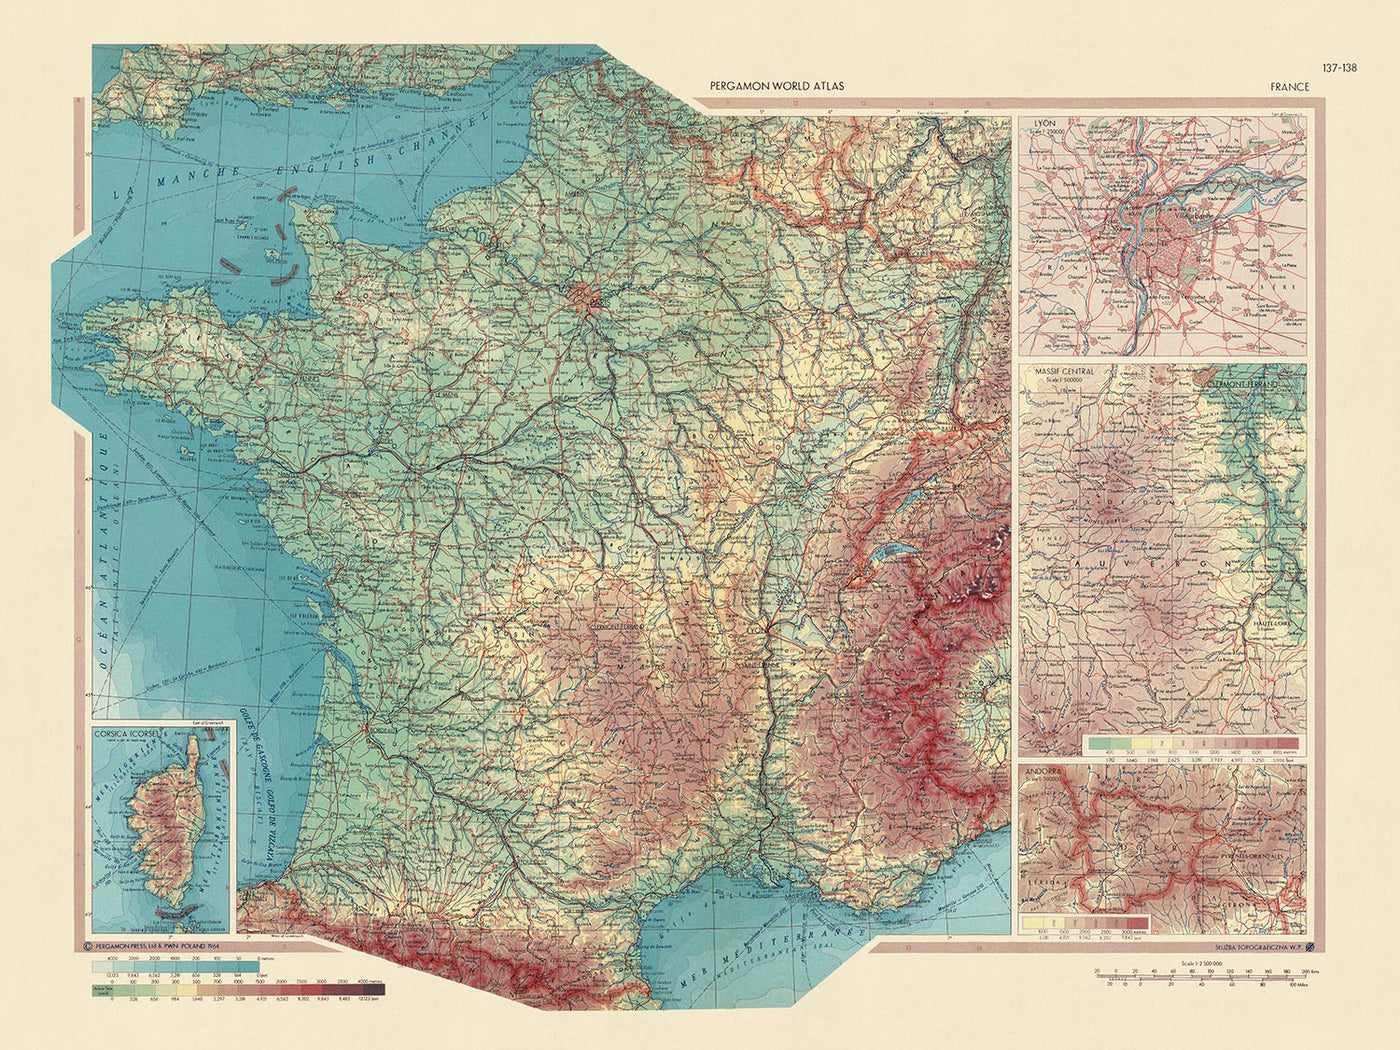 Ancienne carte de France du service topographique de l'armée polonaise, 1967 : Andorre, Massif Central, Lyon, Corse, disposition politique et physique détaillée